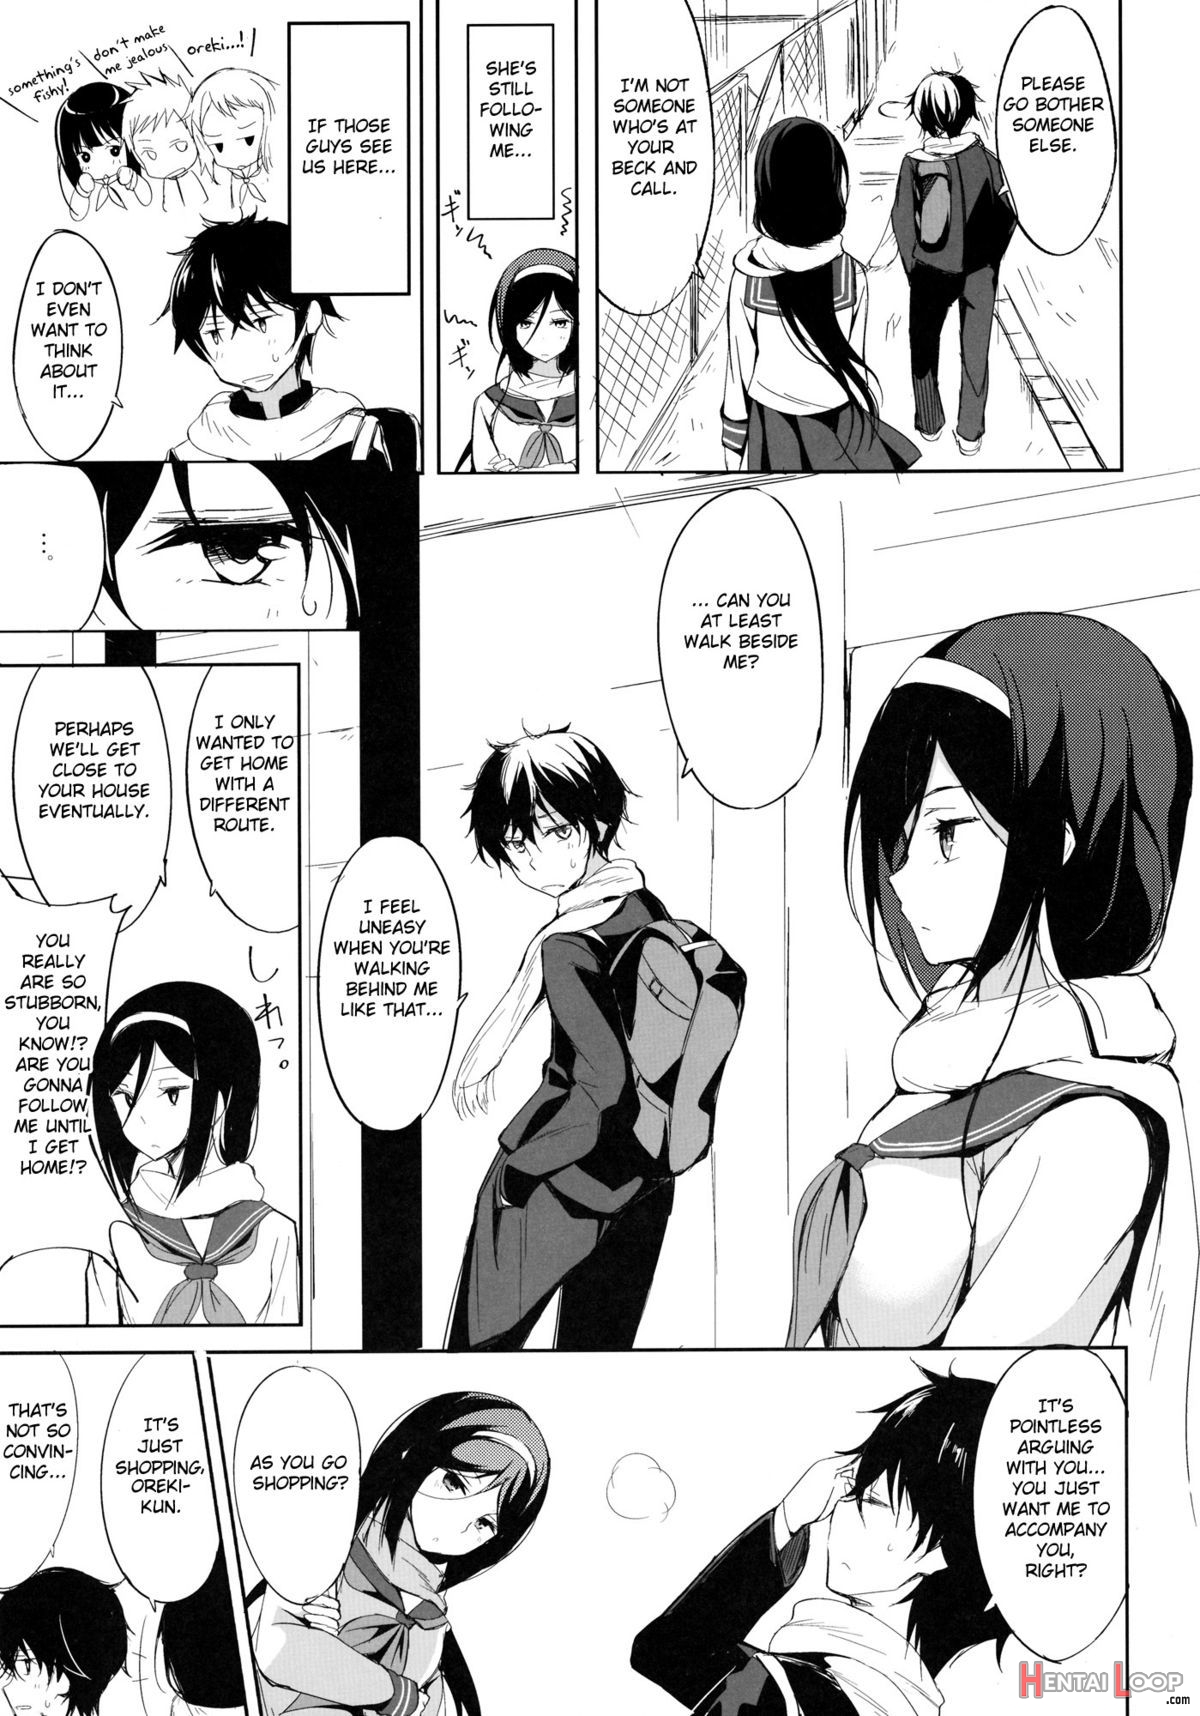 Mitsuhyouka page 4